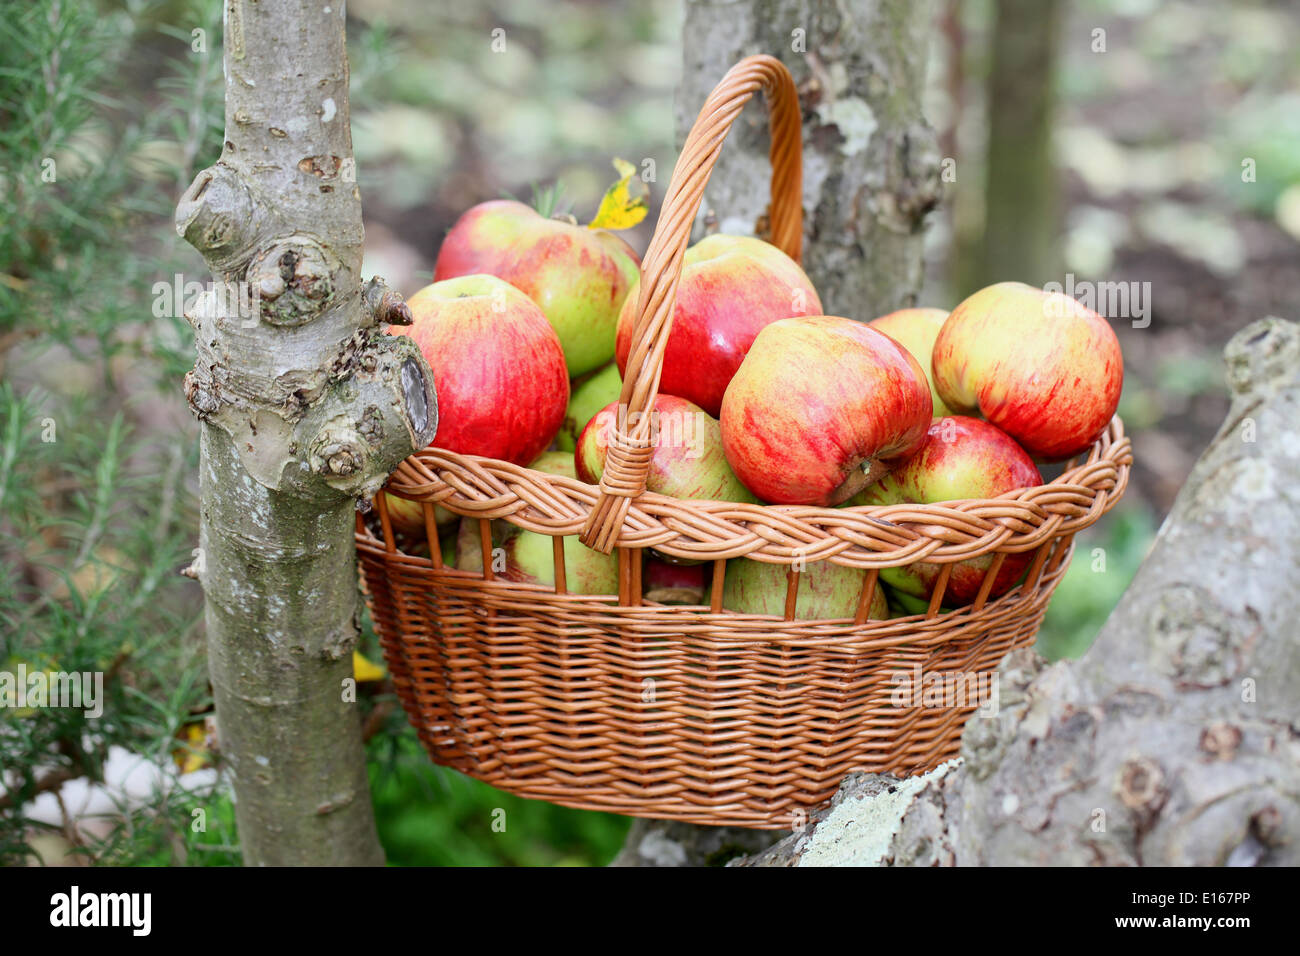 Croquant et juteux fraîchement récolté les pommes dans un panier en osier Banque D'Images